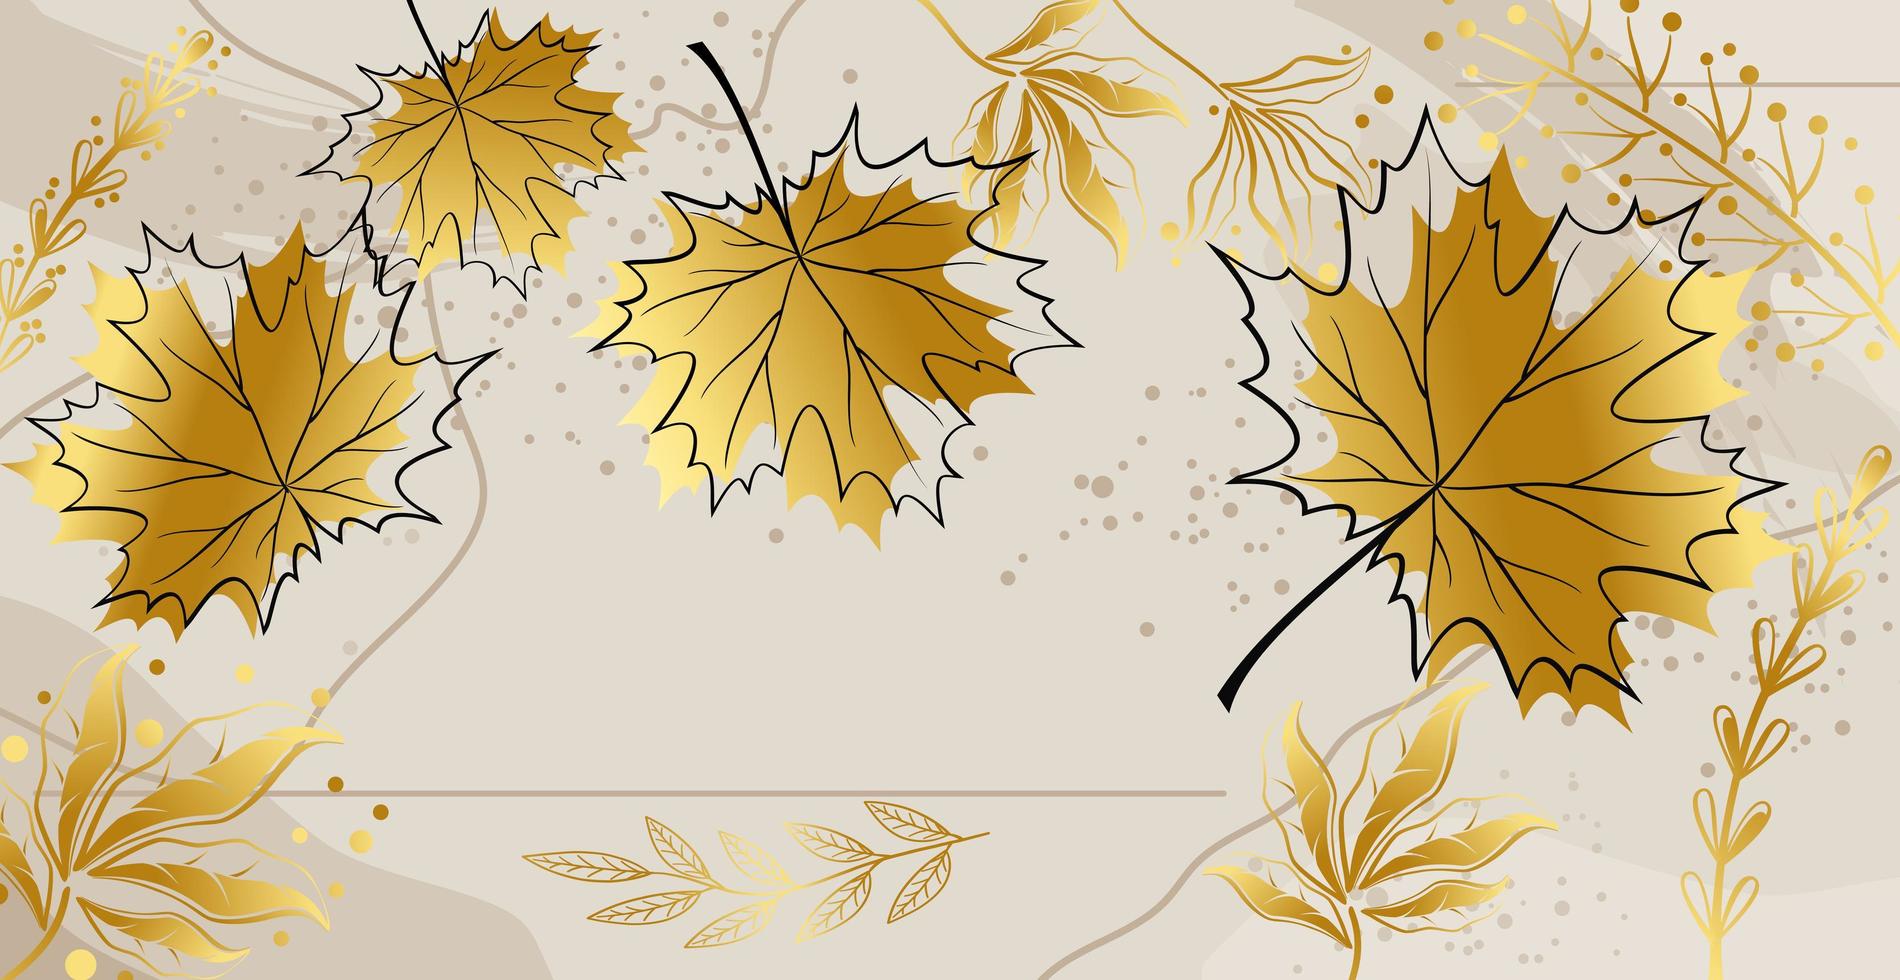 feuilles d'érable d'automne sur un fond coloré - vector